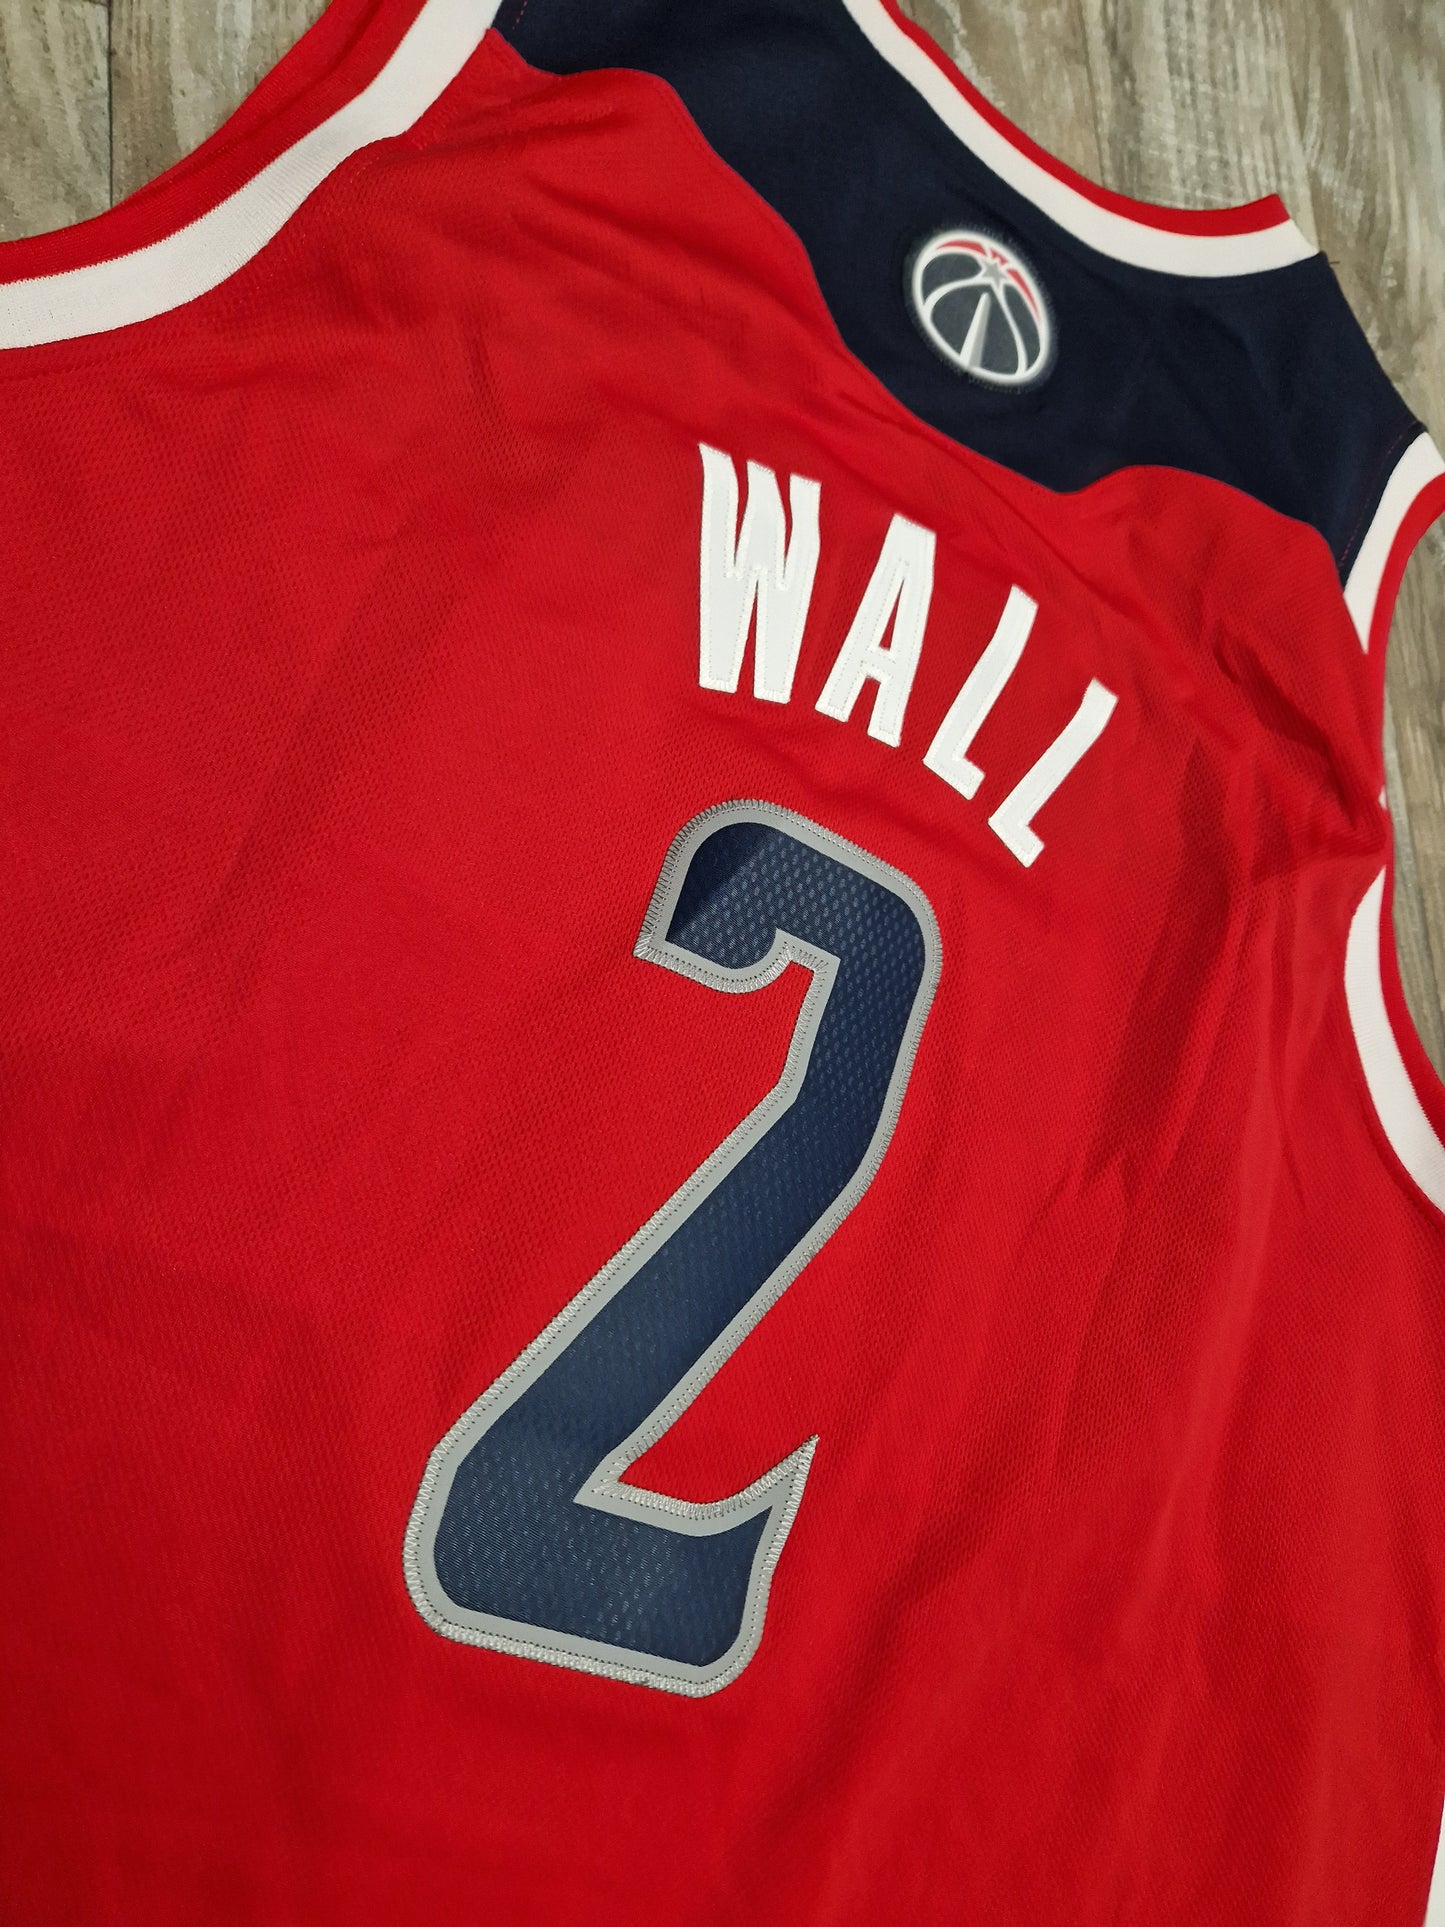 John Wall Washington Wizards Jersey Size Large